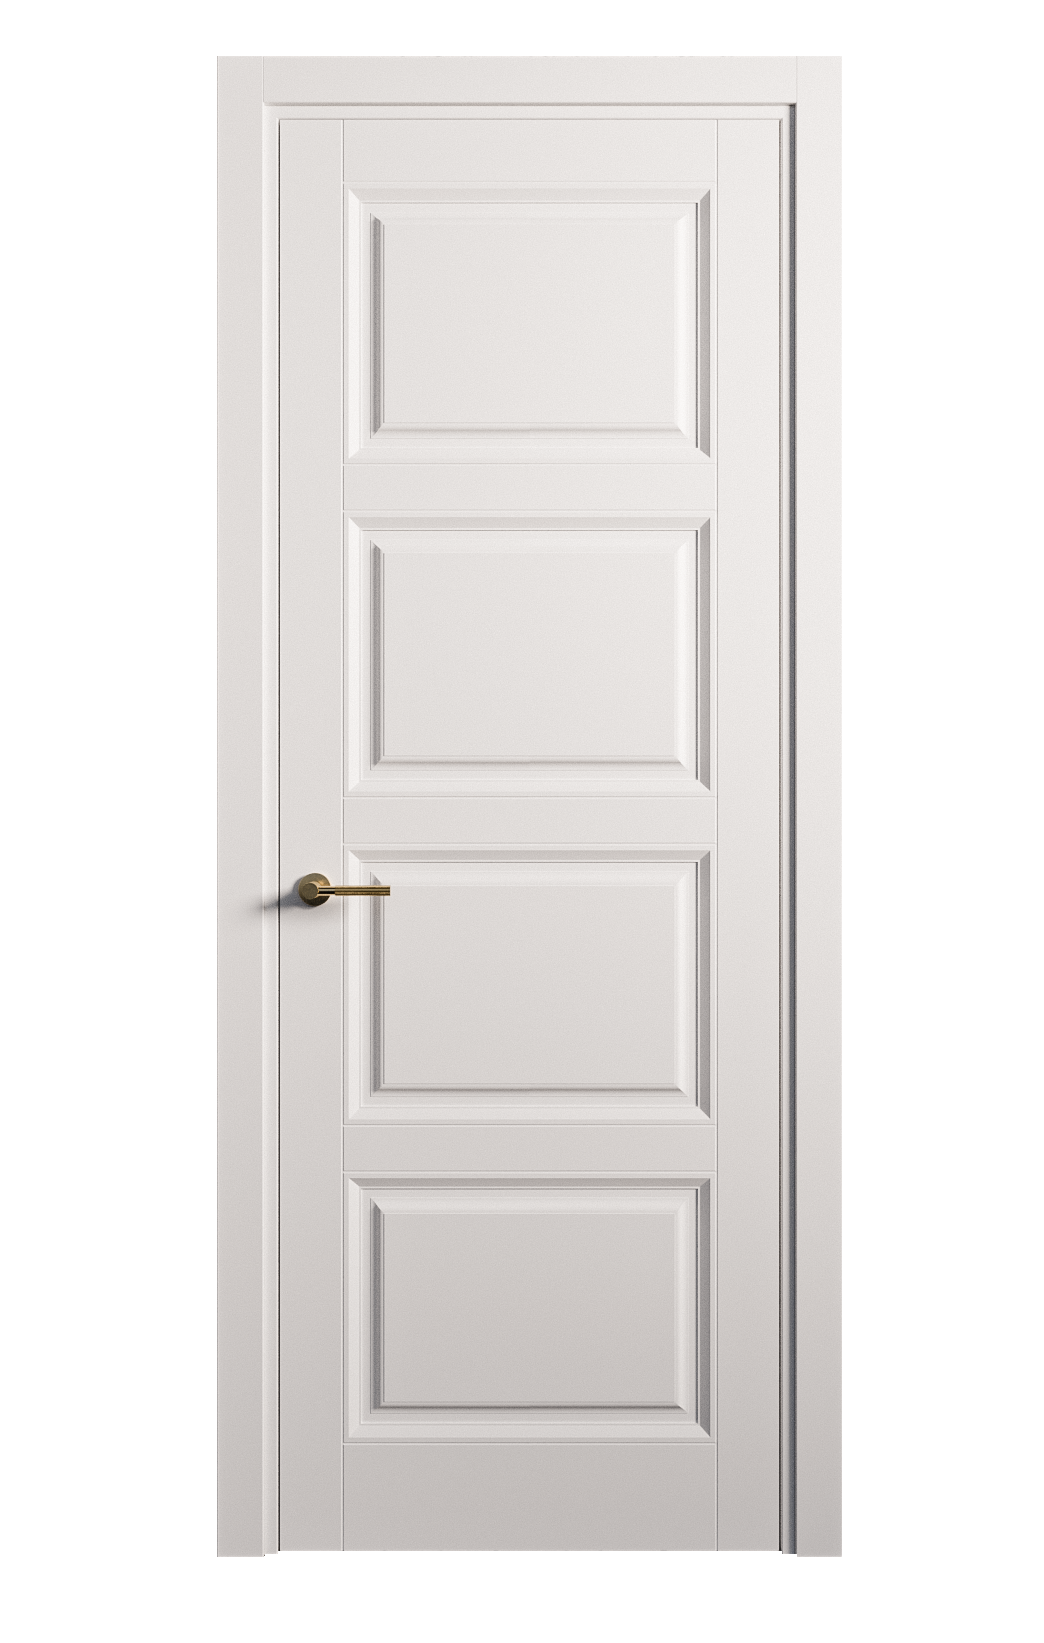 Межкомнатная дверь Venezia-4 глухая эмаль ral 9003 25874